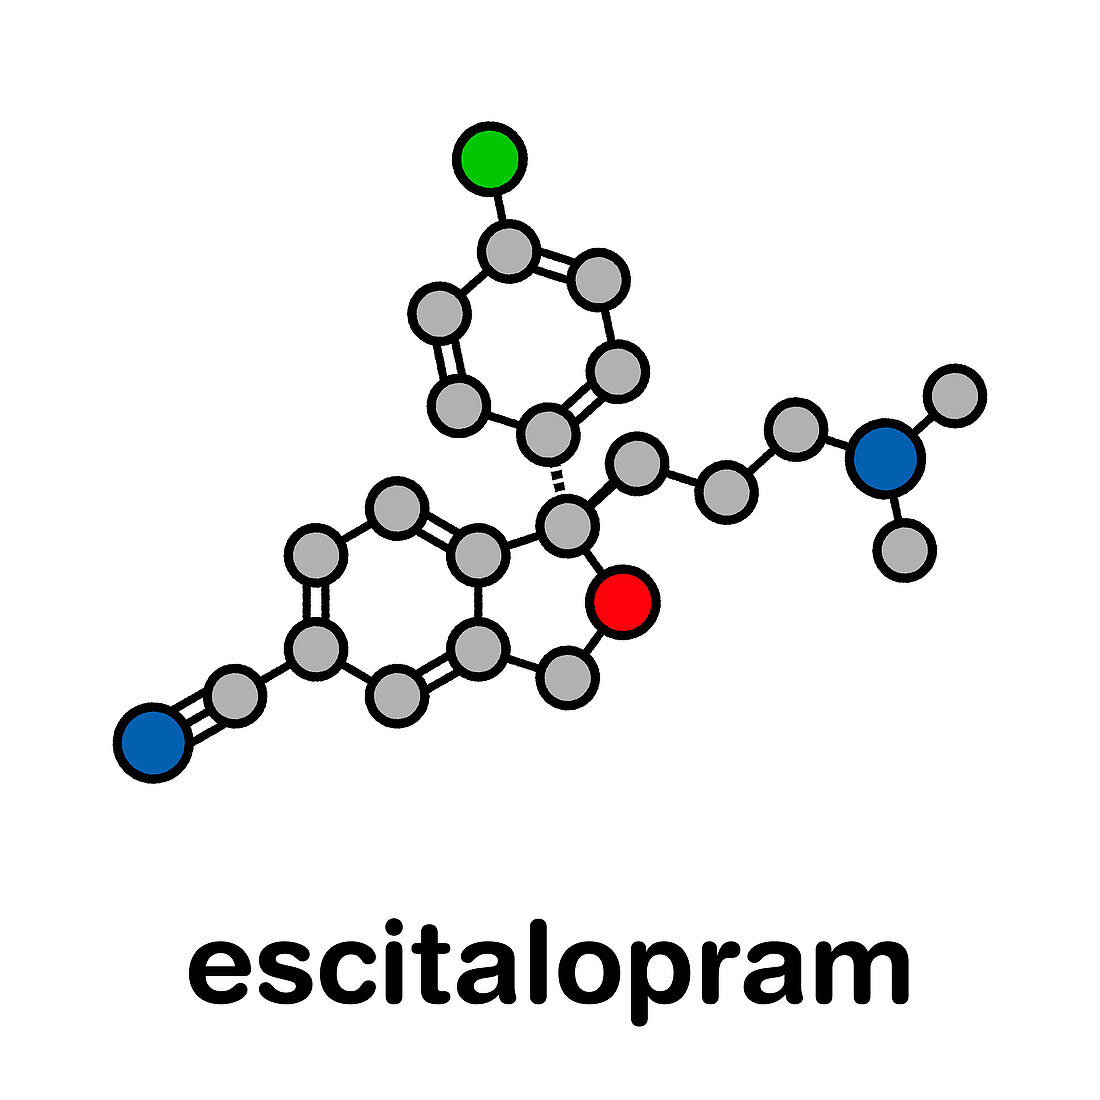 Escitalopram antidepressant drug, molecular model